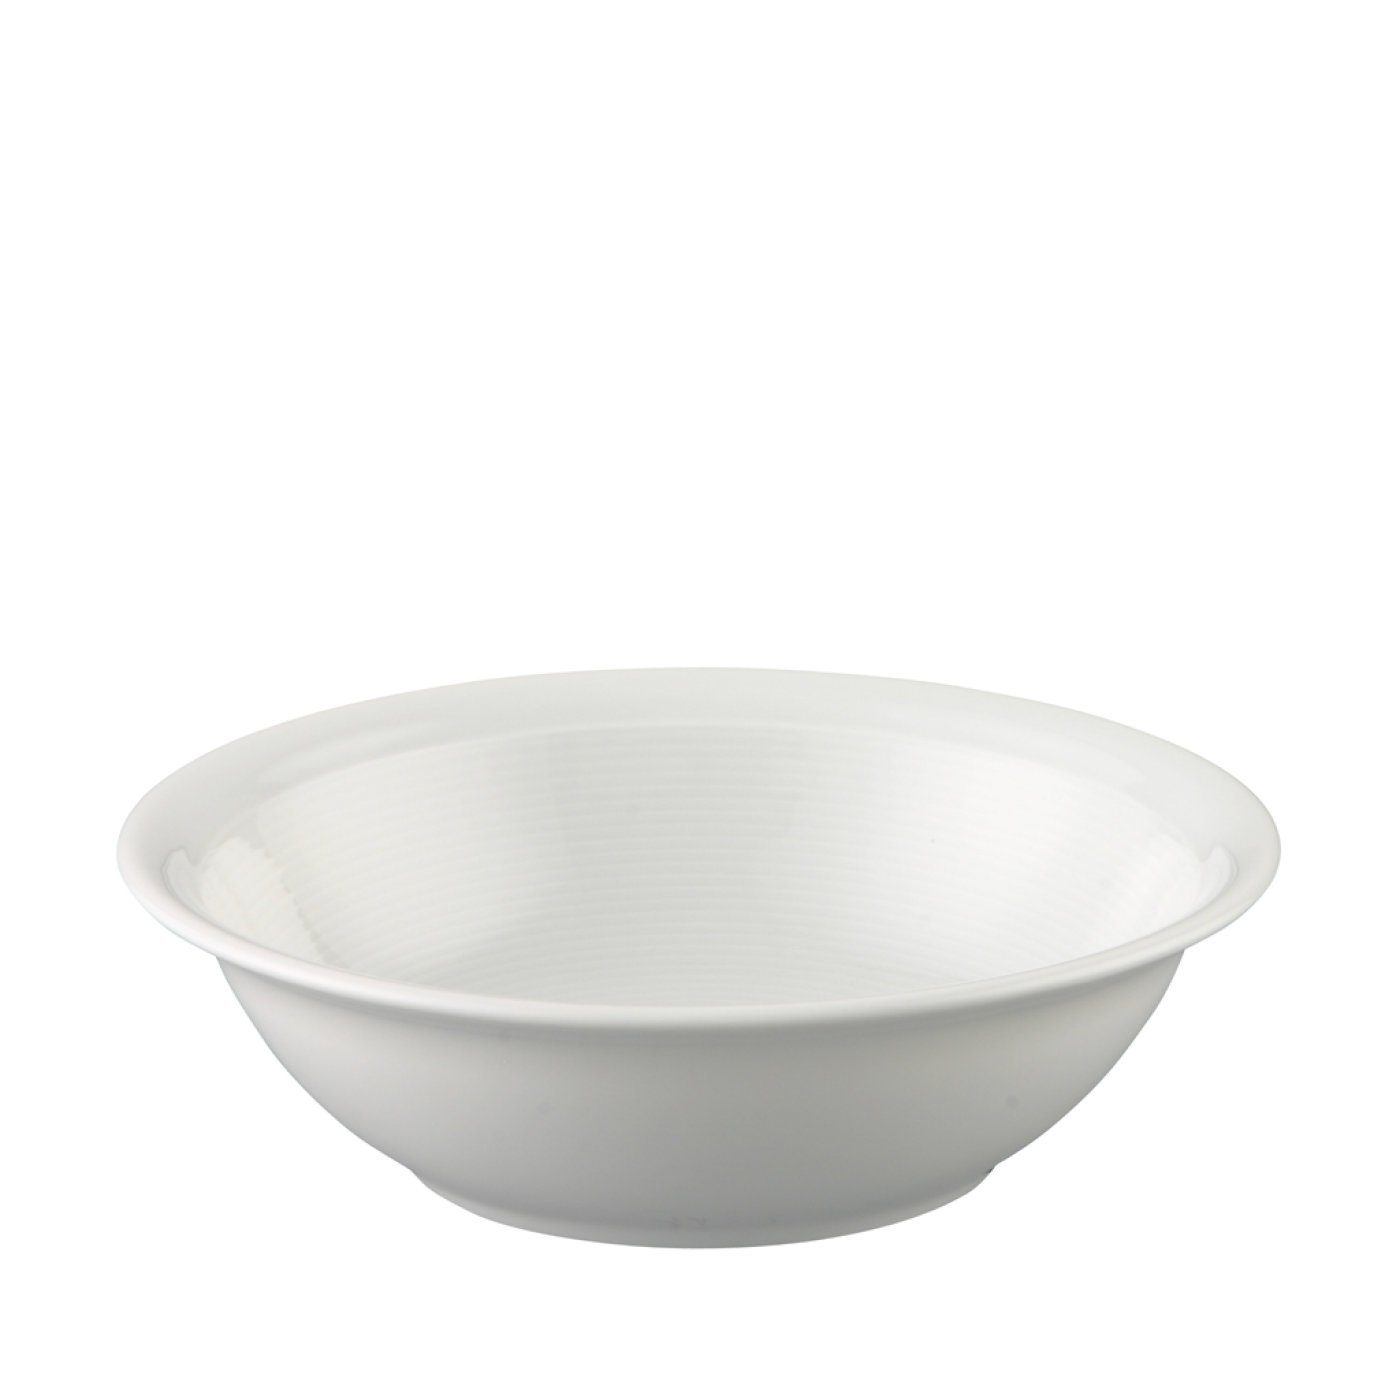 Thomas Porzellan Müslischale Bowl 17 cm - TREND Weiß - 1 Stück, Porzellan, (Einzelartikel, 1-tlg), Porzellan, spülmaschinenfest und mikrowellengeeignet